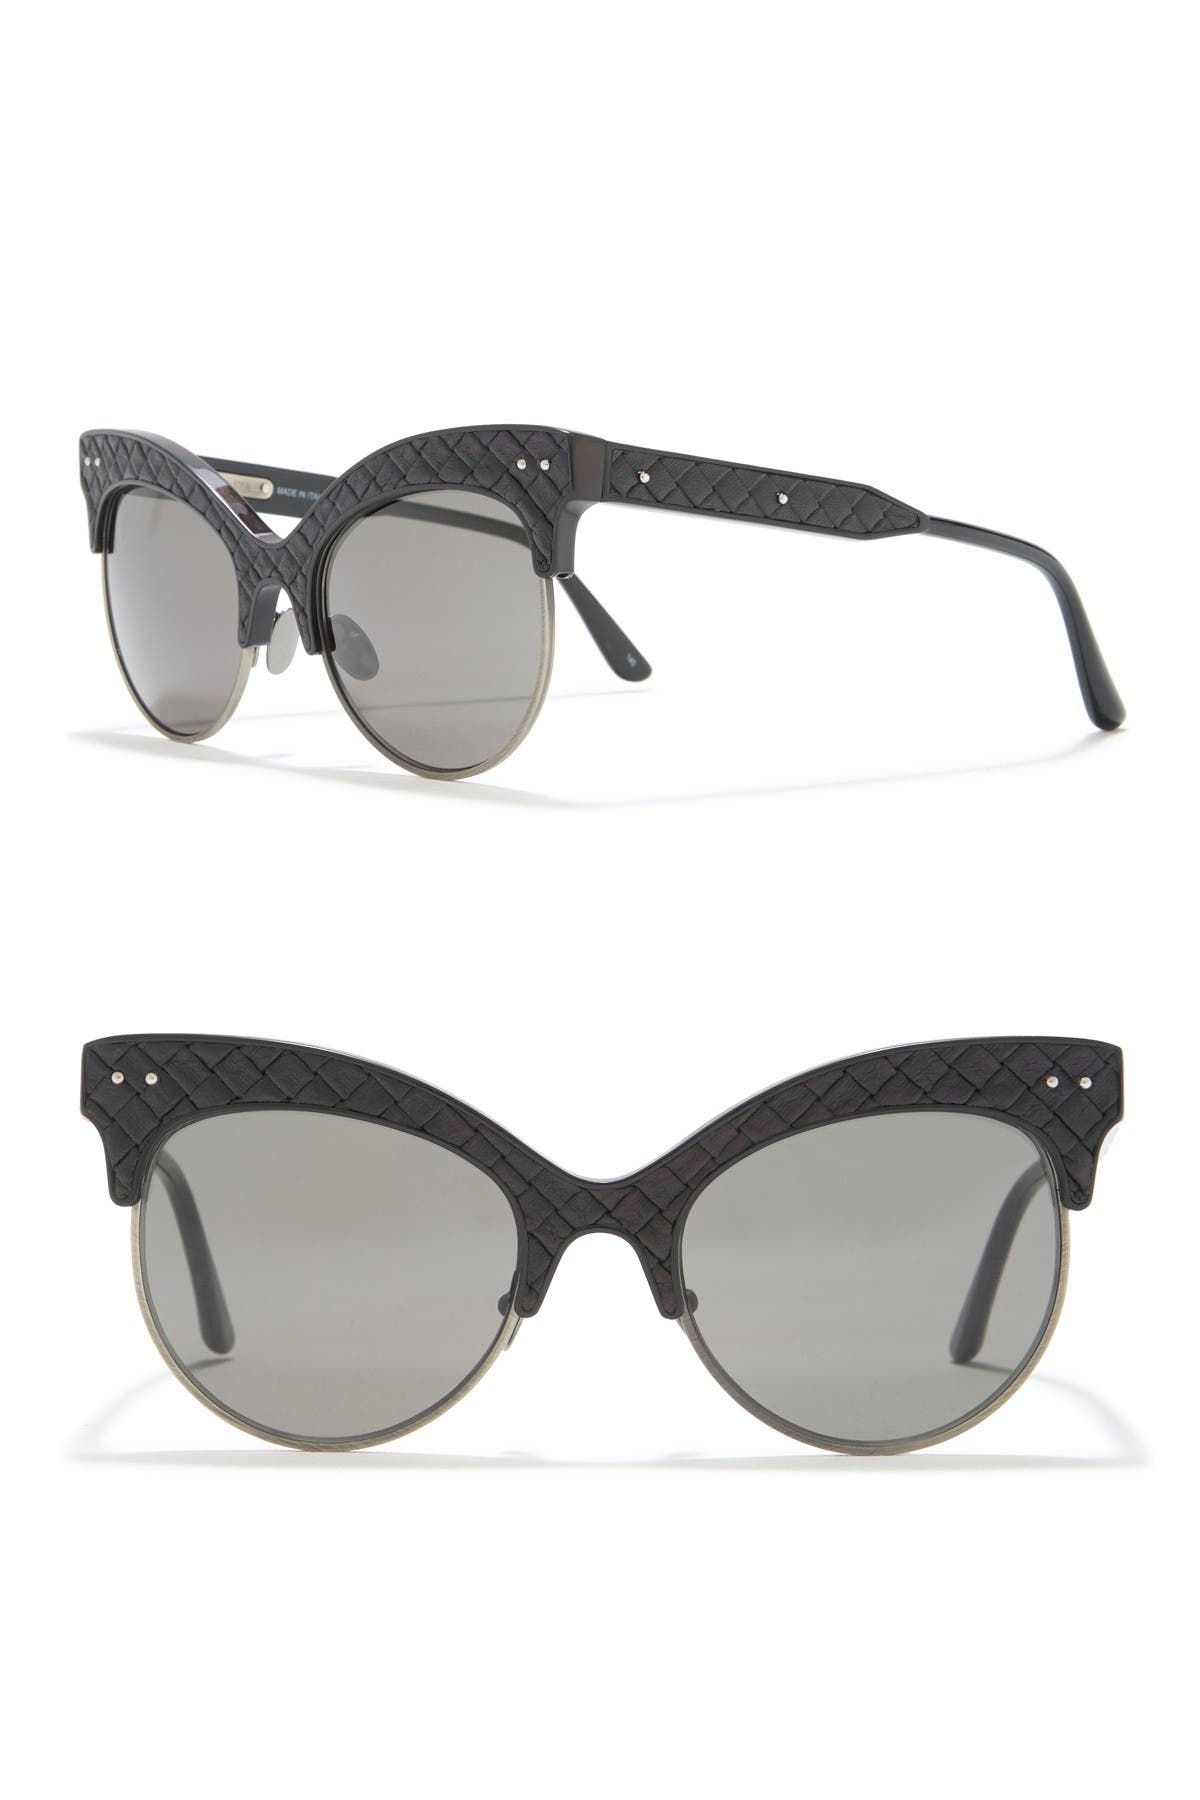 Bottega Veneta | 52mm Modified Cat Eye Sunglasses | Nordstrom Rack